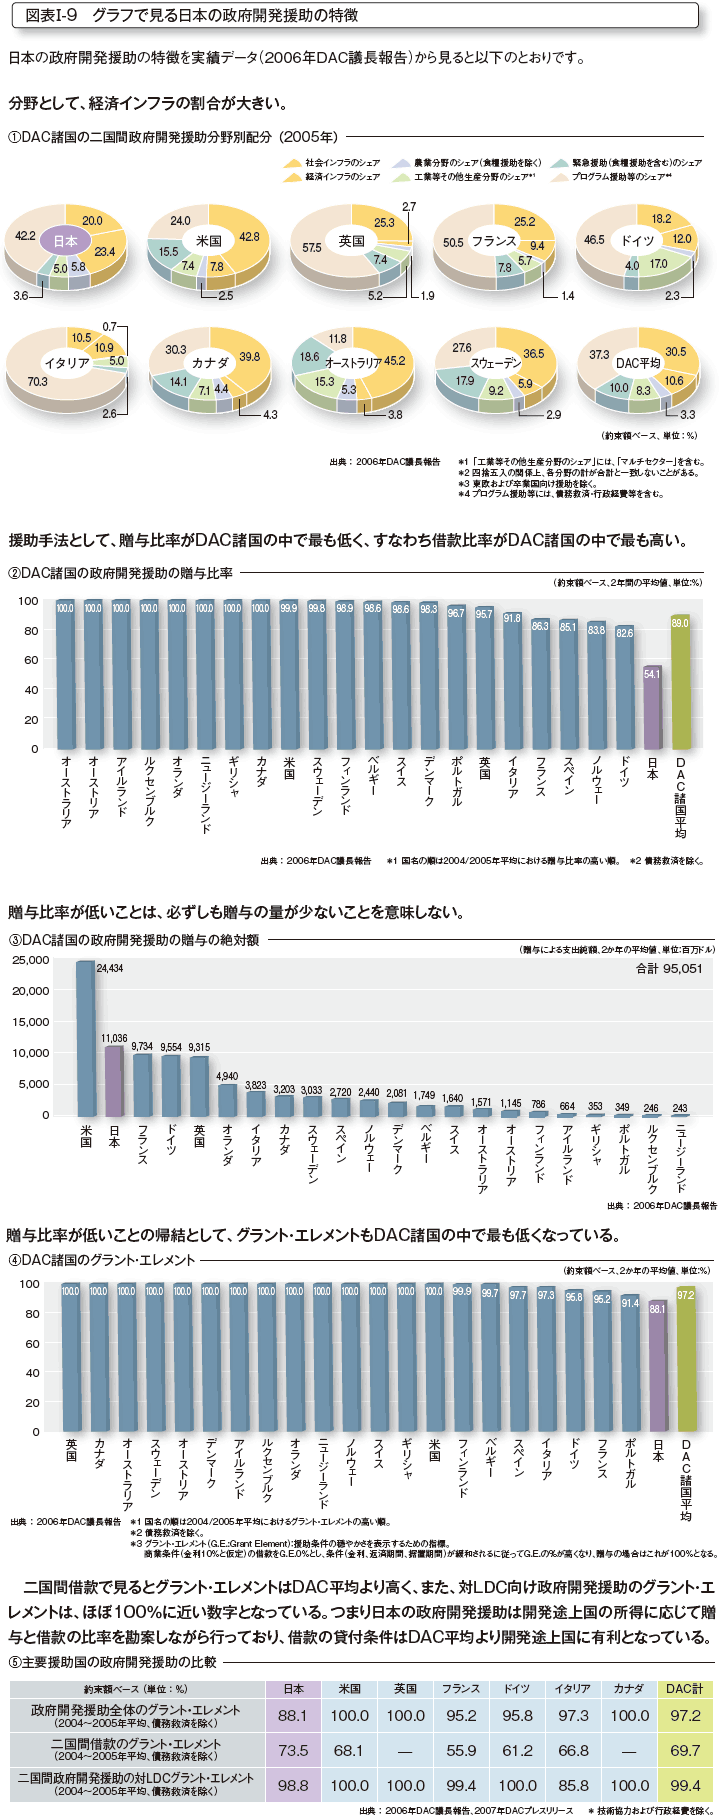 図表I-9 グラフで見る日本の政府開発援助の特徴